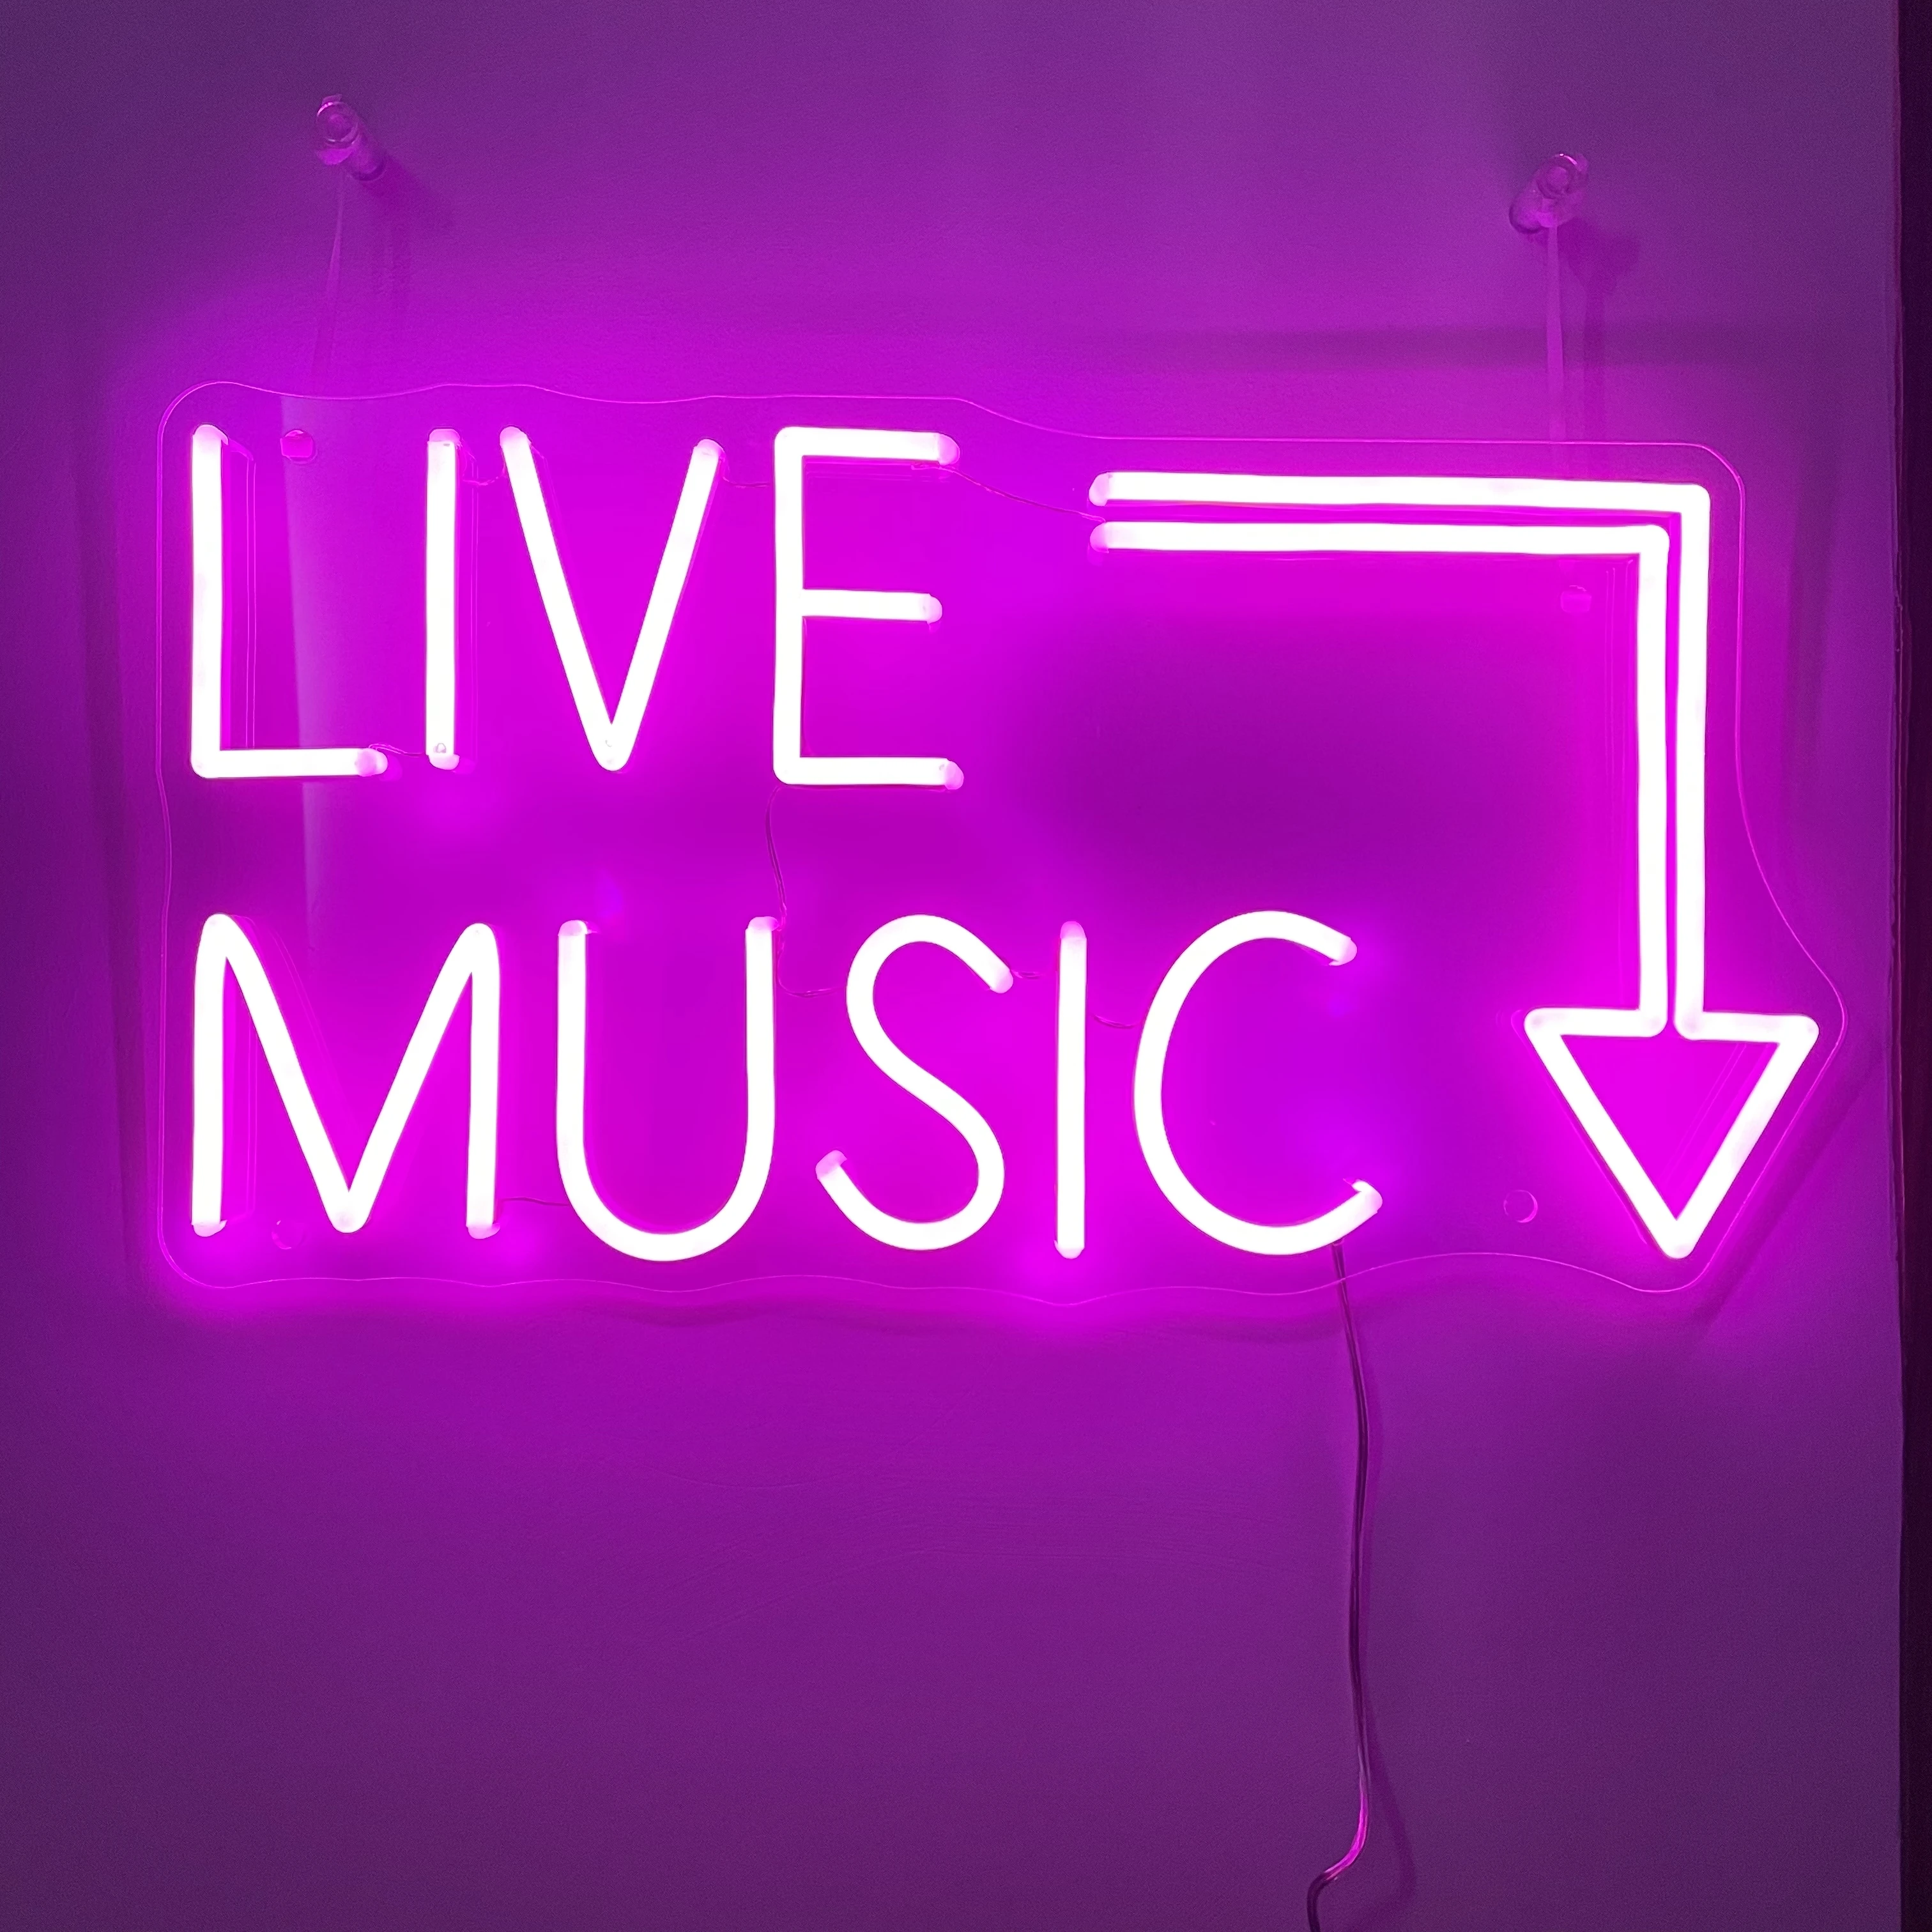 Live Music Handmade Custom LED Neon Sign,Wedding Light Sign,Neon LED Sign,Neon Lights,Neon Sign Bedroom Girl,LED Neon